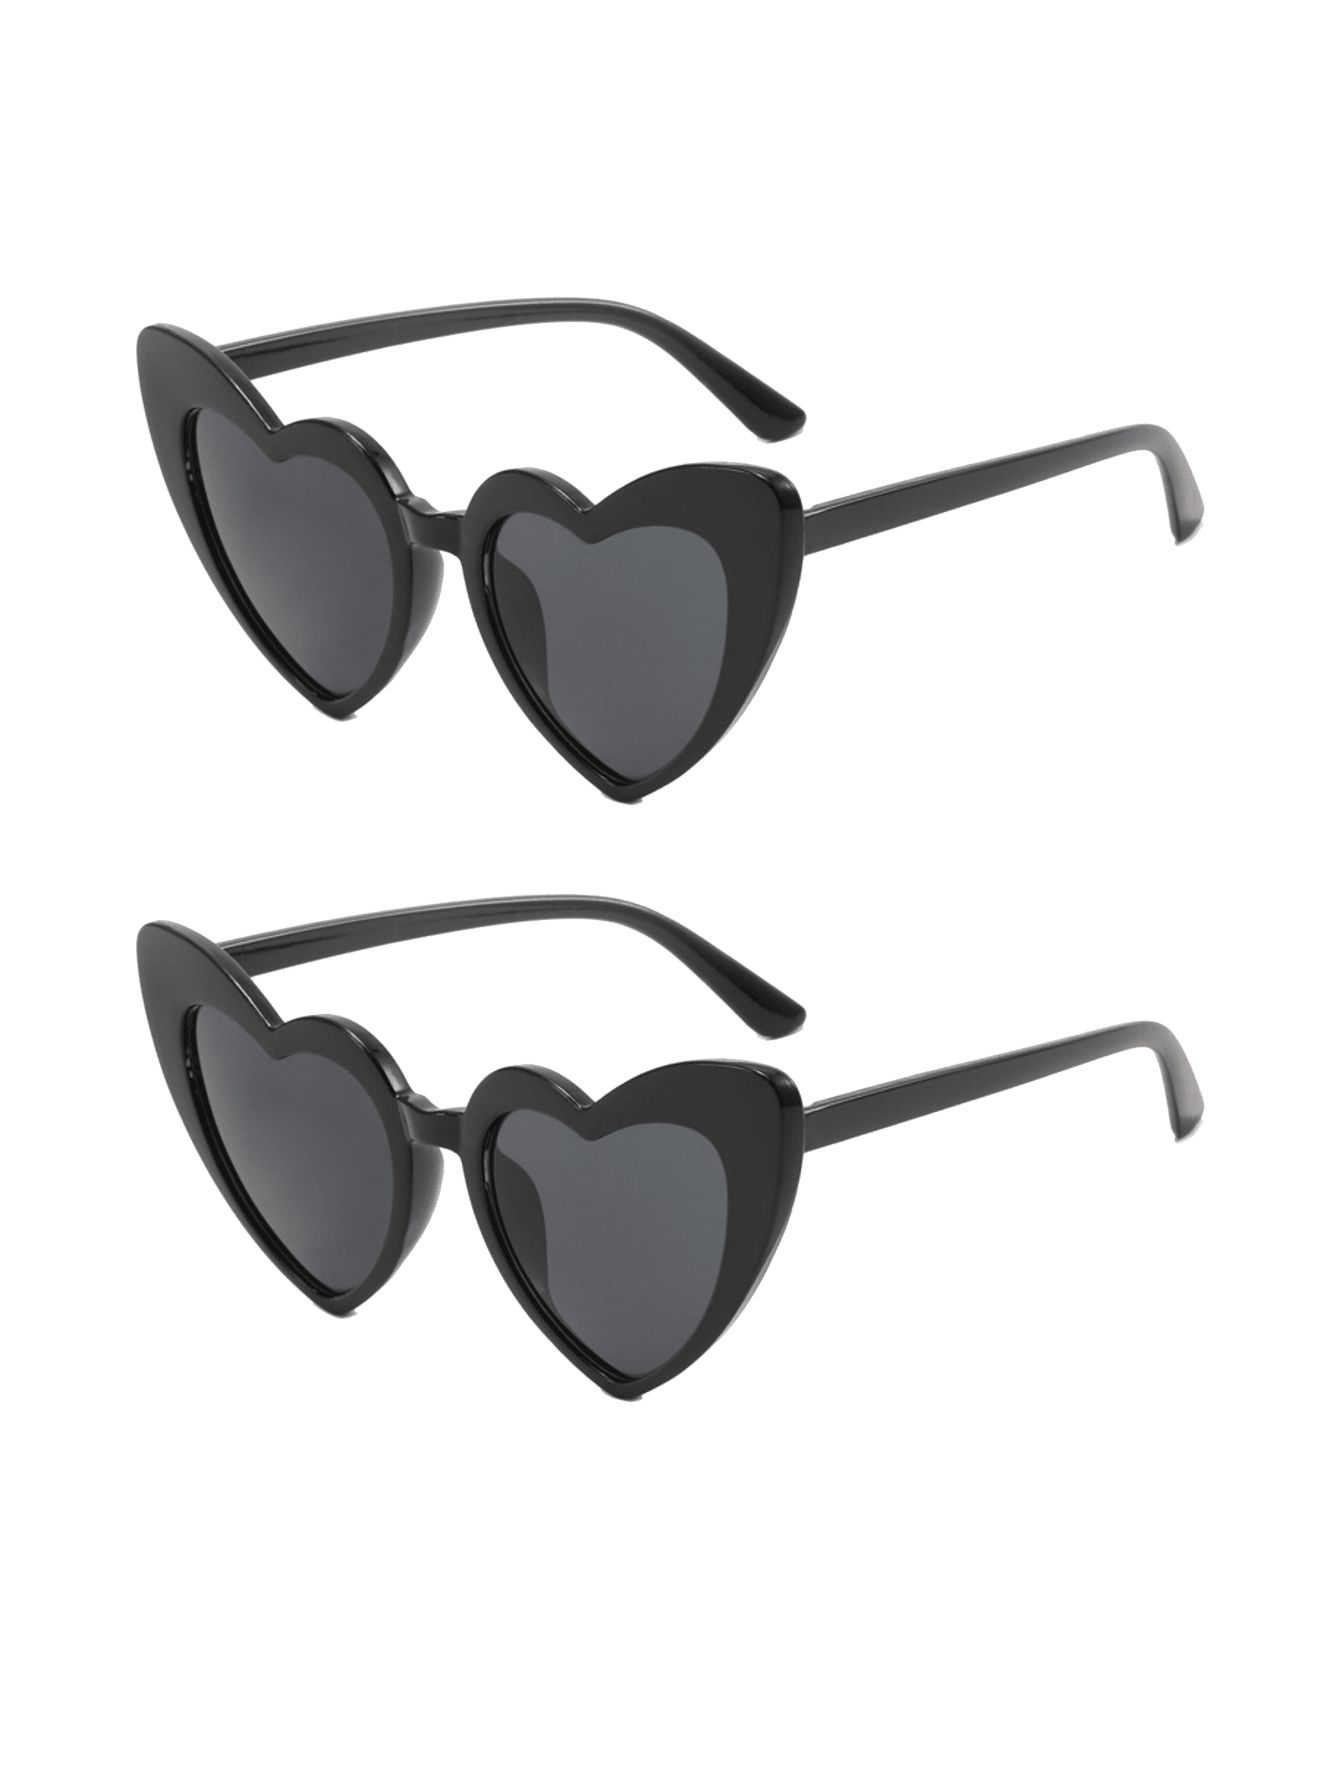 2pcs Heart Shaped Sunglasses For Women Big Sunglasses For Women Oversized Y2k Sunglasses With UV ... | SHEIN